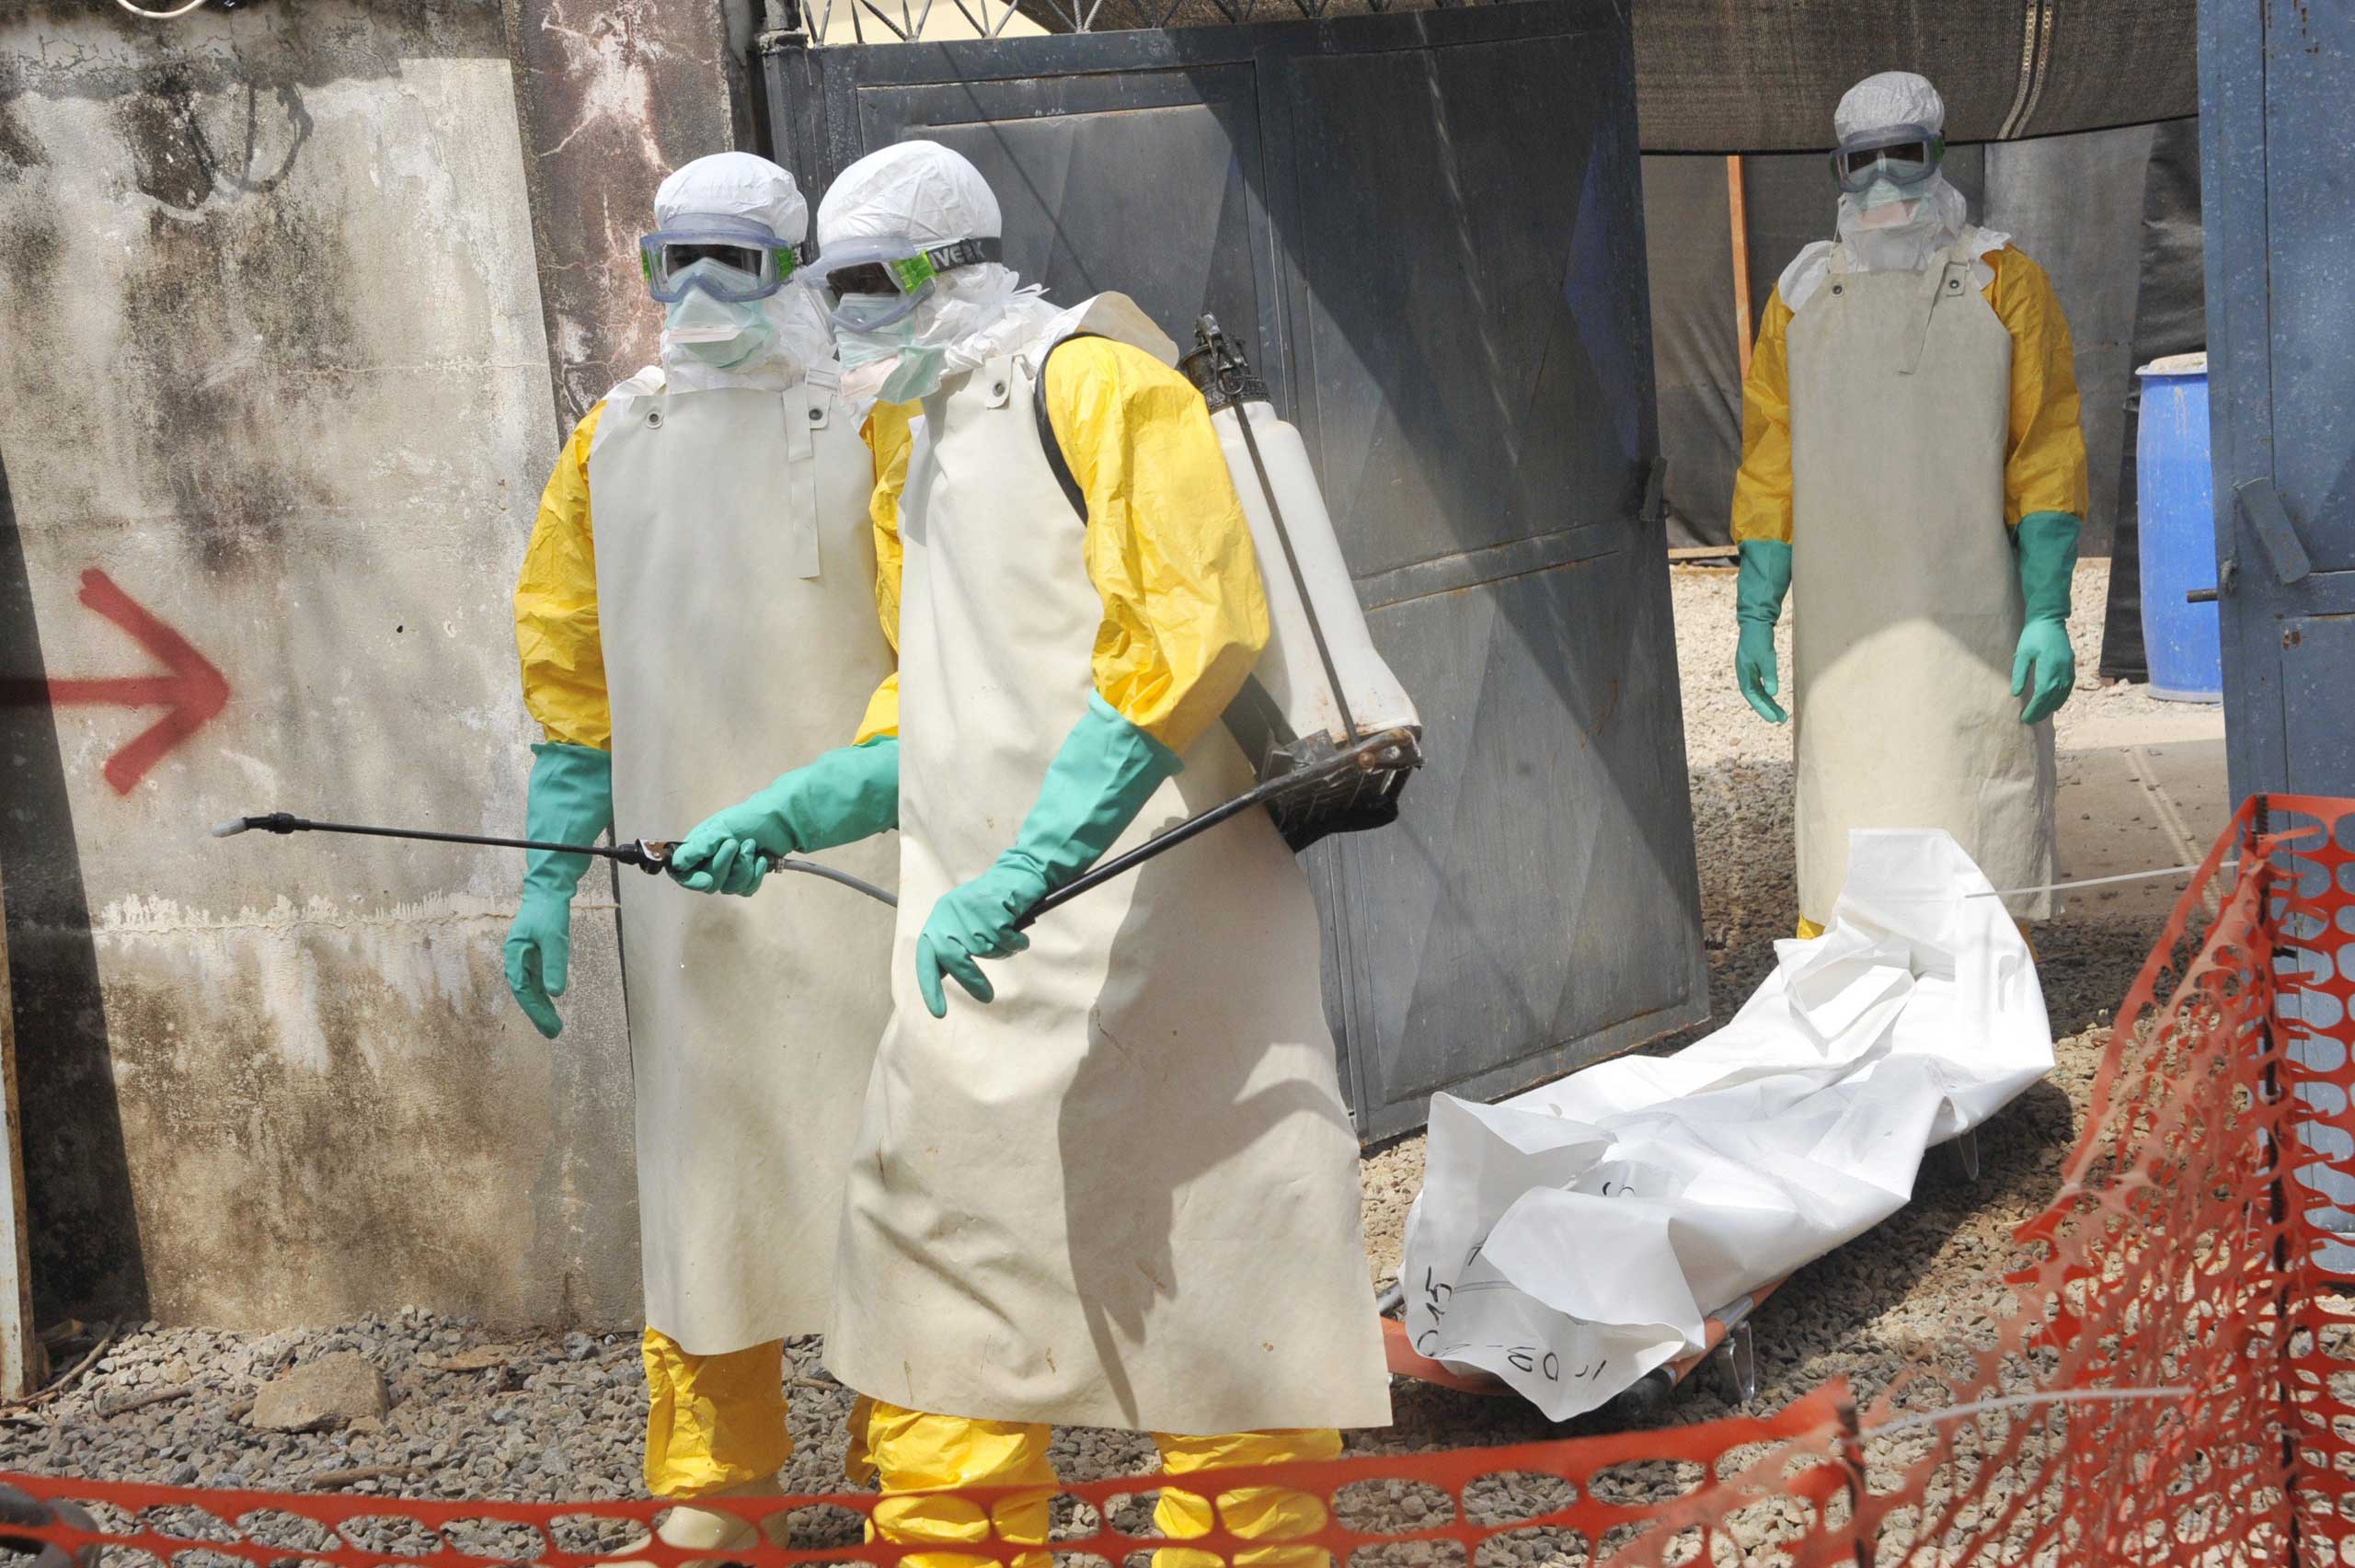 Ebola Guinea